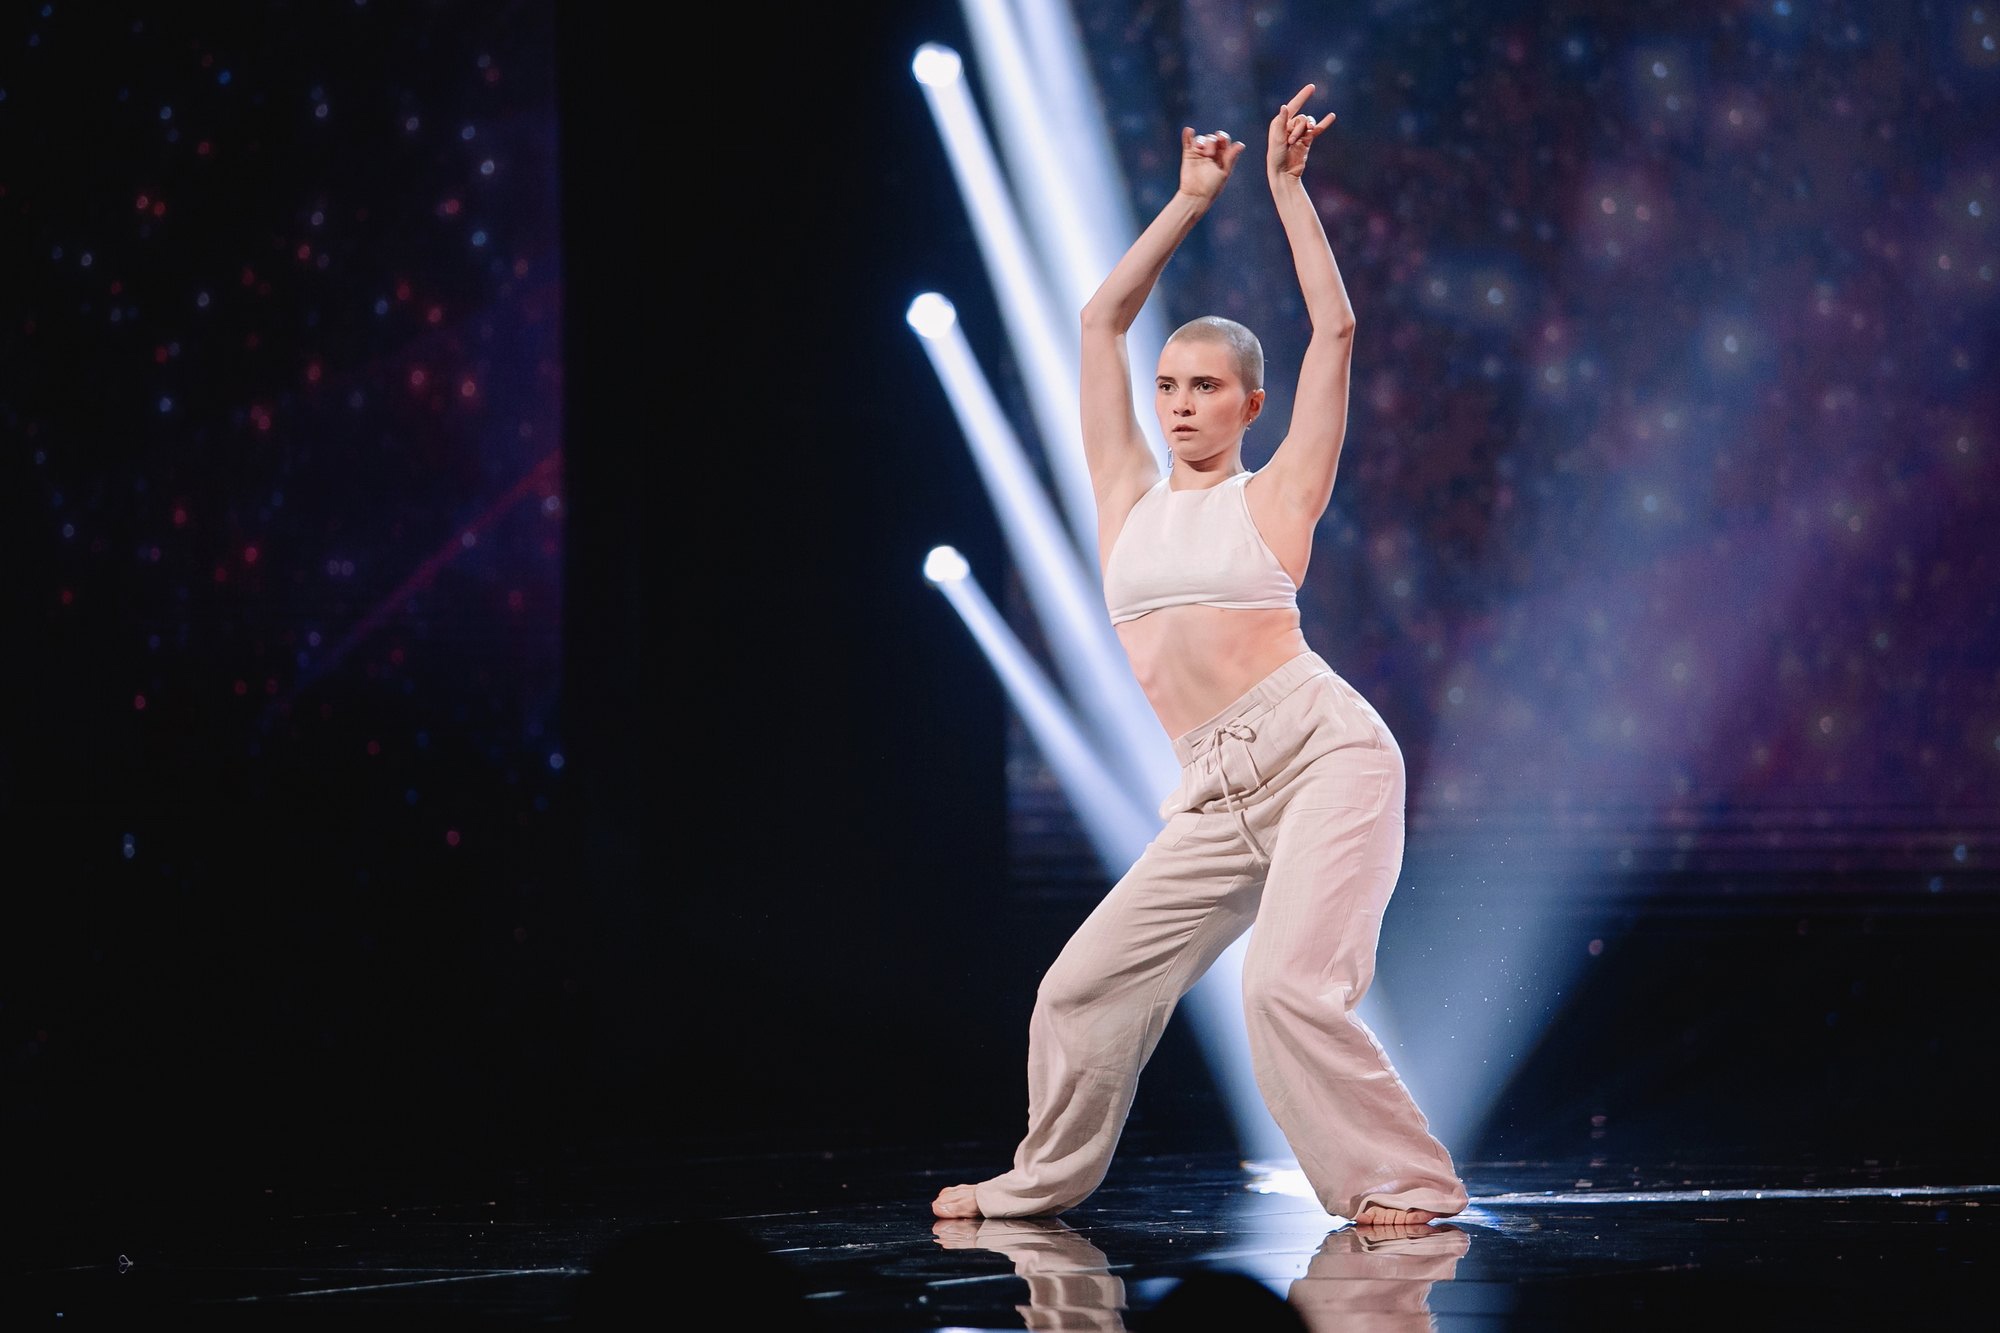 Сыктывкарка заворожила своими движениями жюри шоу “Новые танцы” на ТНТ